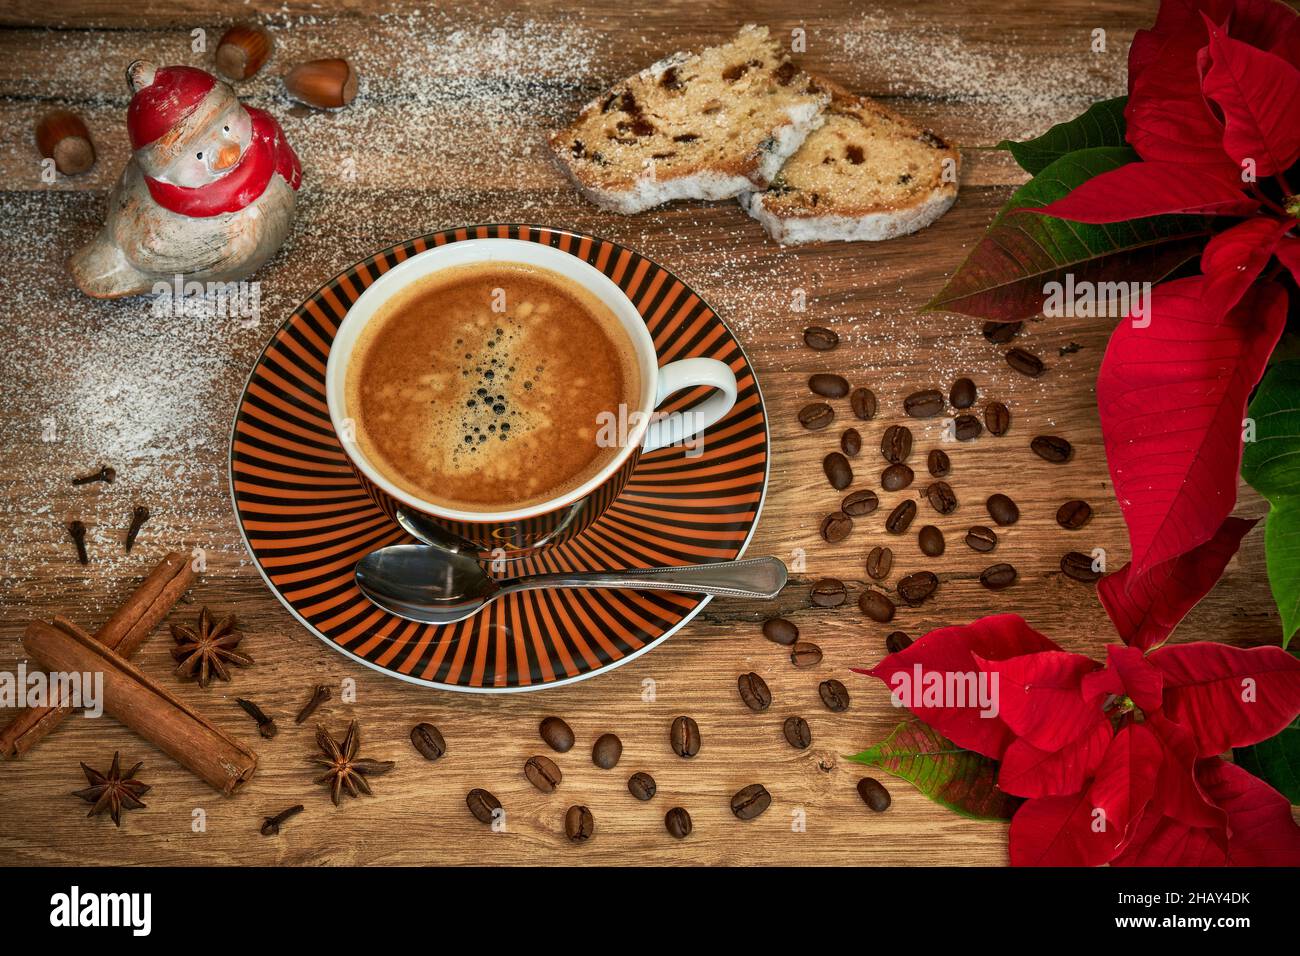 Weihnachtliches Kaffeeemotiv mit Kaffeetasse, Weihnachtsstern, Stollen, Kaffeebohnen, Gewürzen, Haselnüssen und einer Vogelfigur auf einem Holztisch. Stockfoto